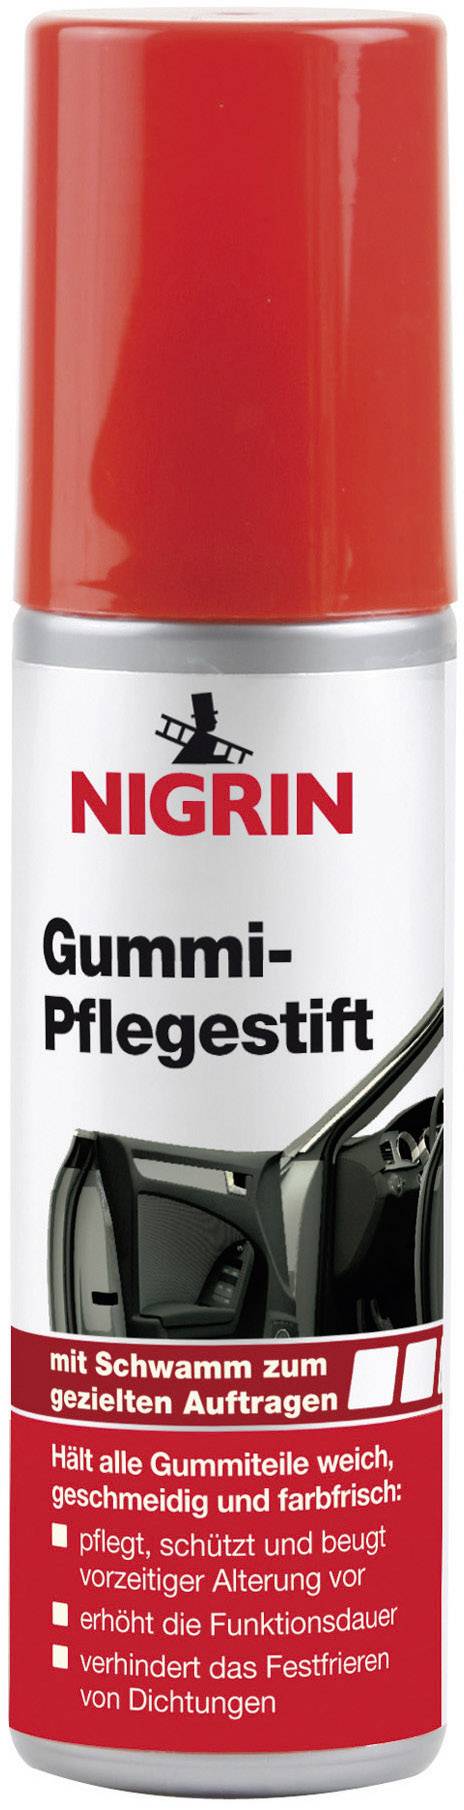 Nigrin Gummi-Pflegestift